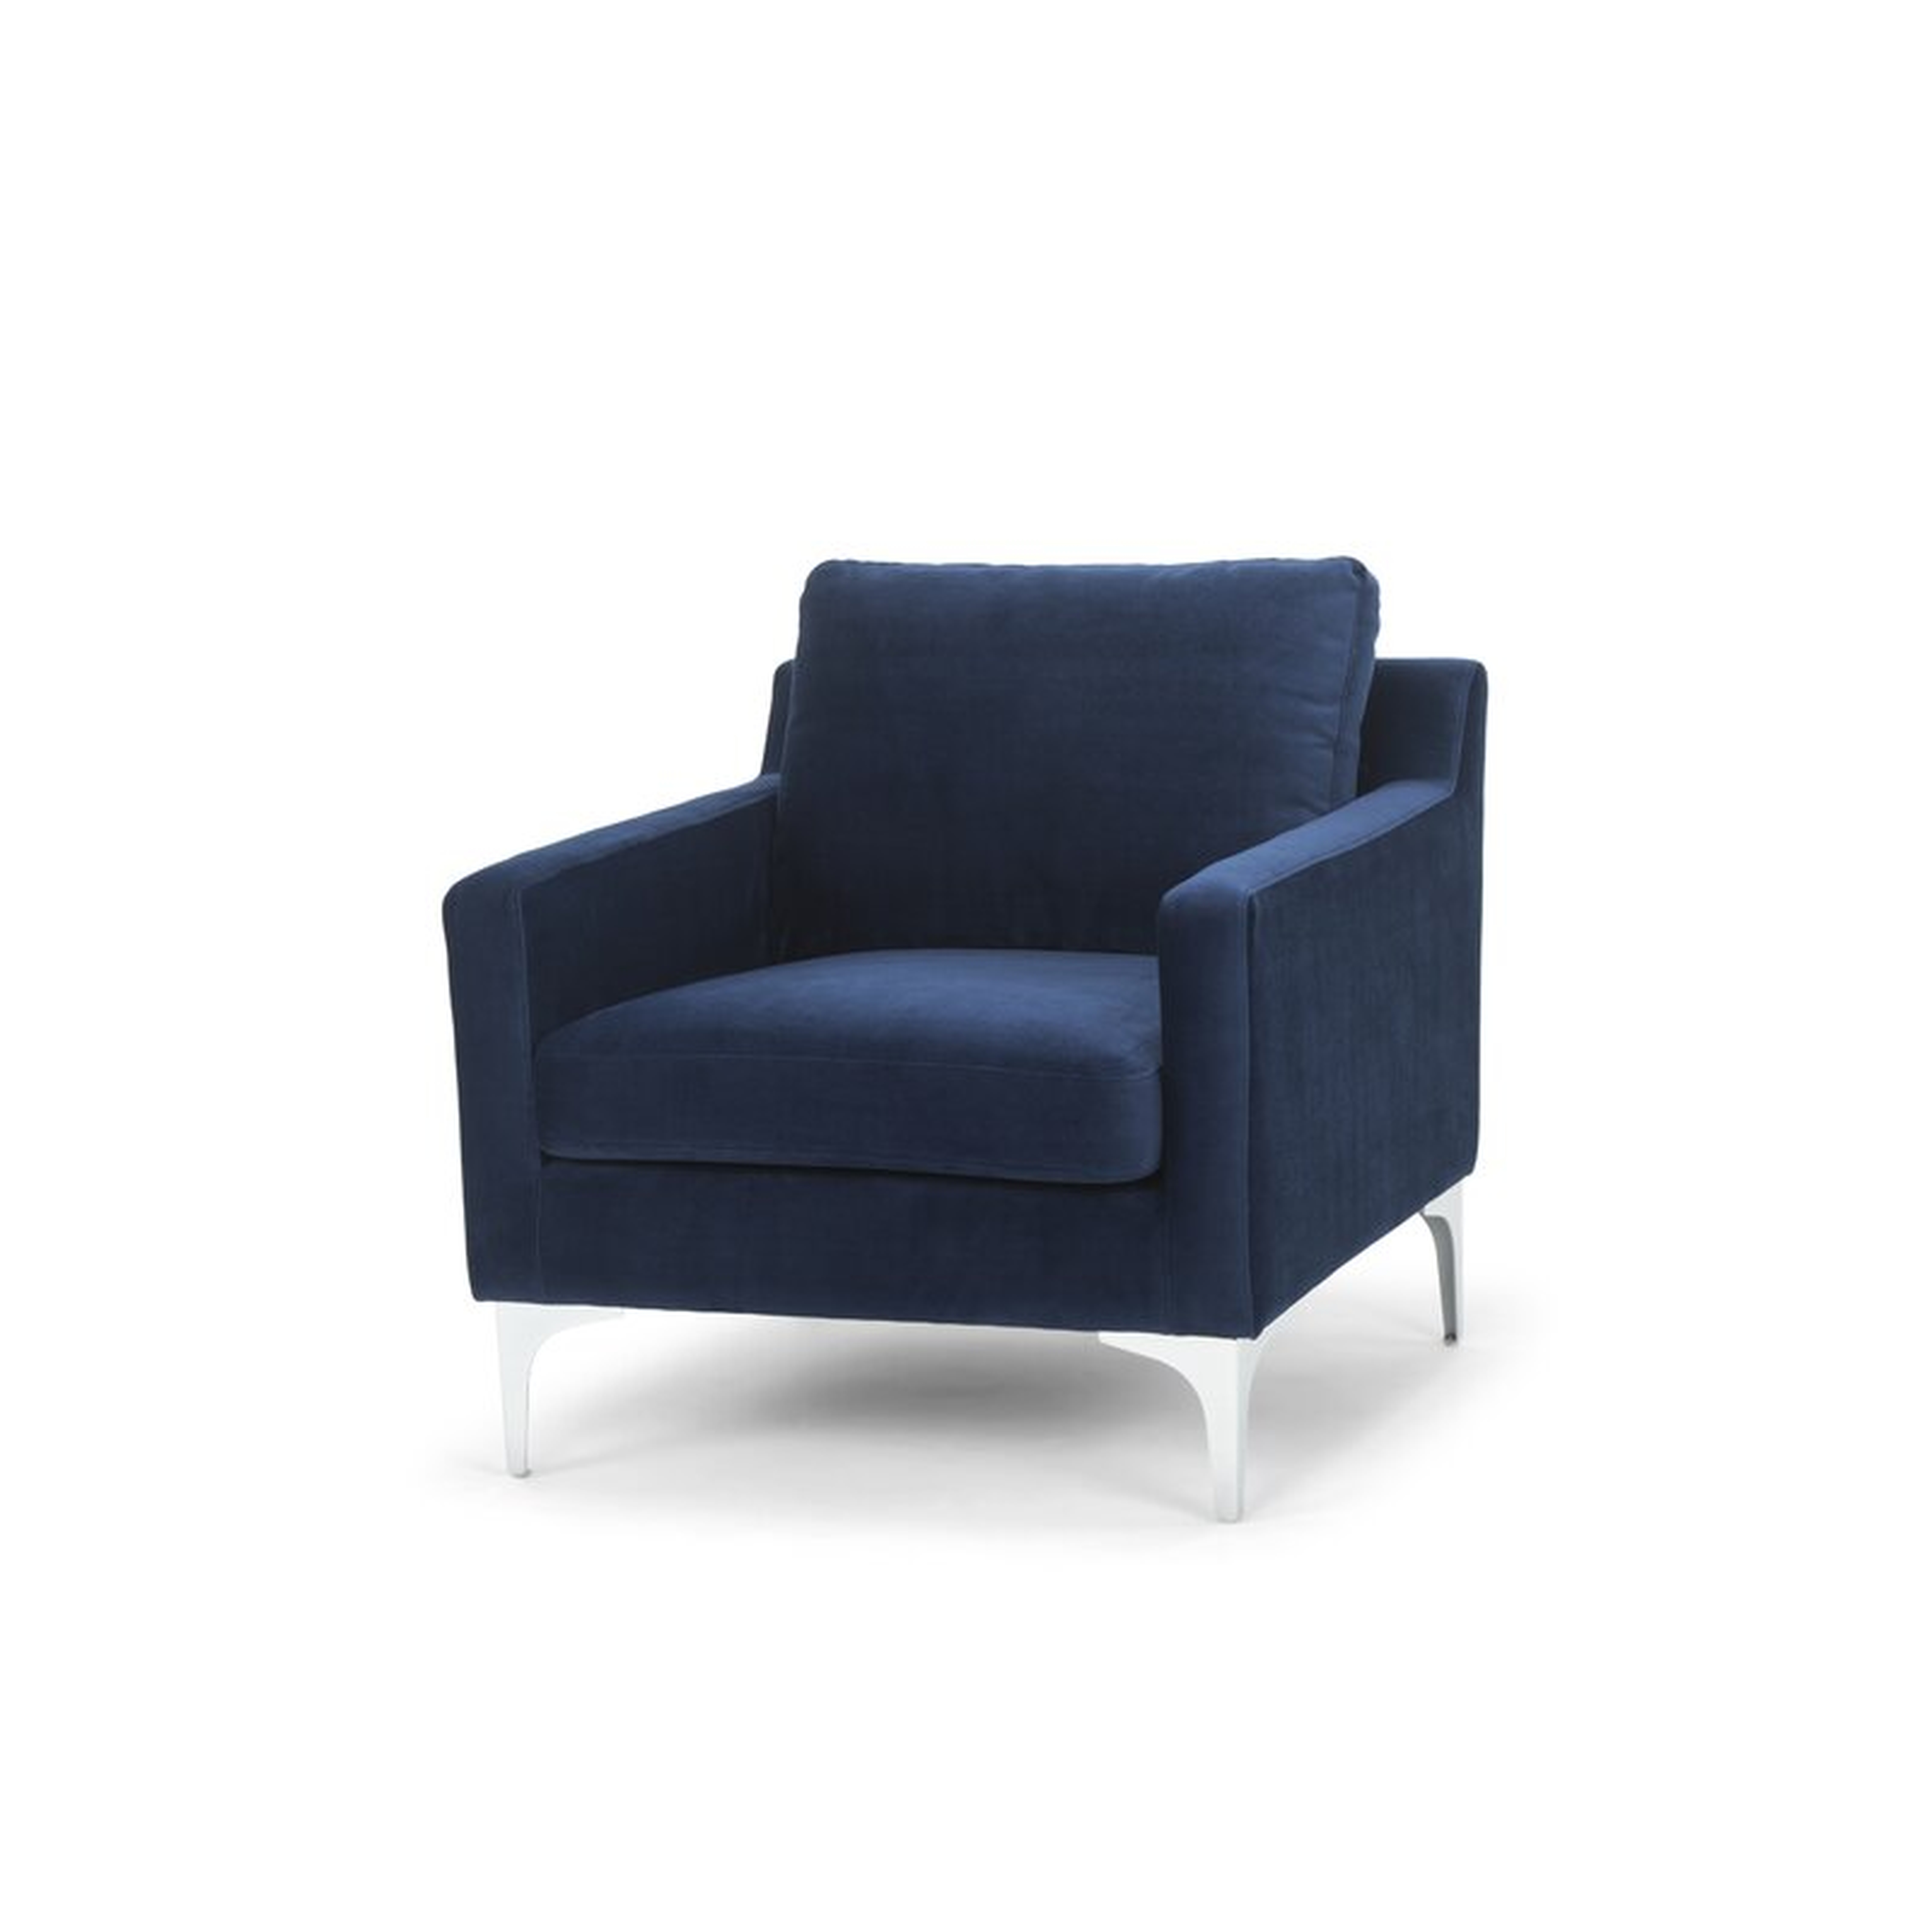 Stax Dark Blue Rumley Lounge Chair - Wayfair